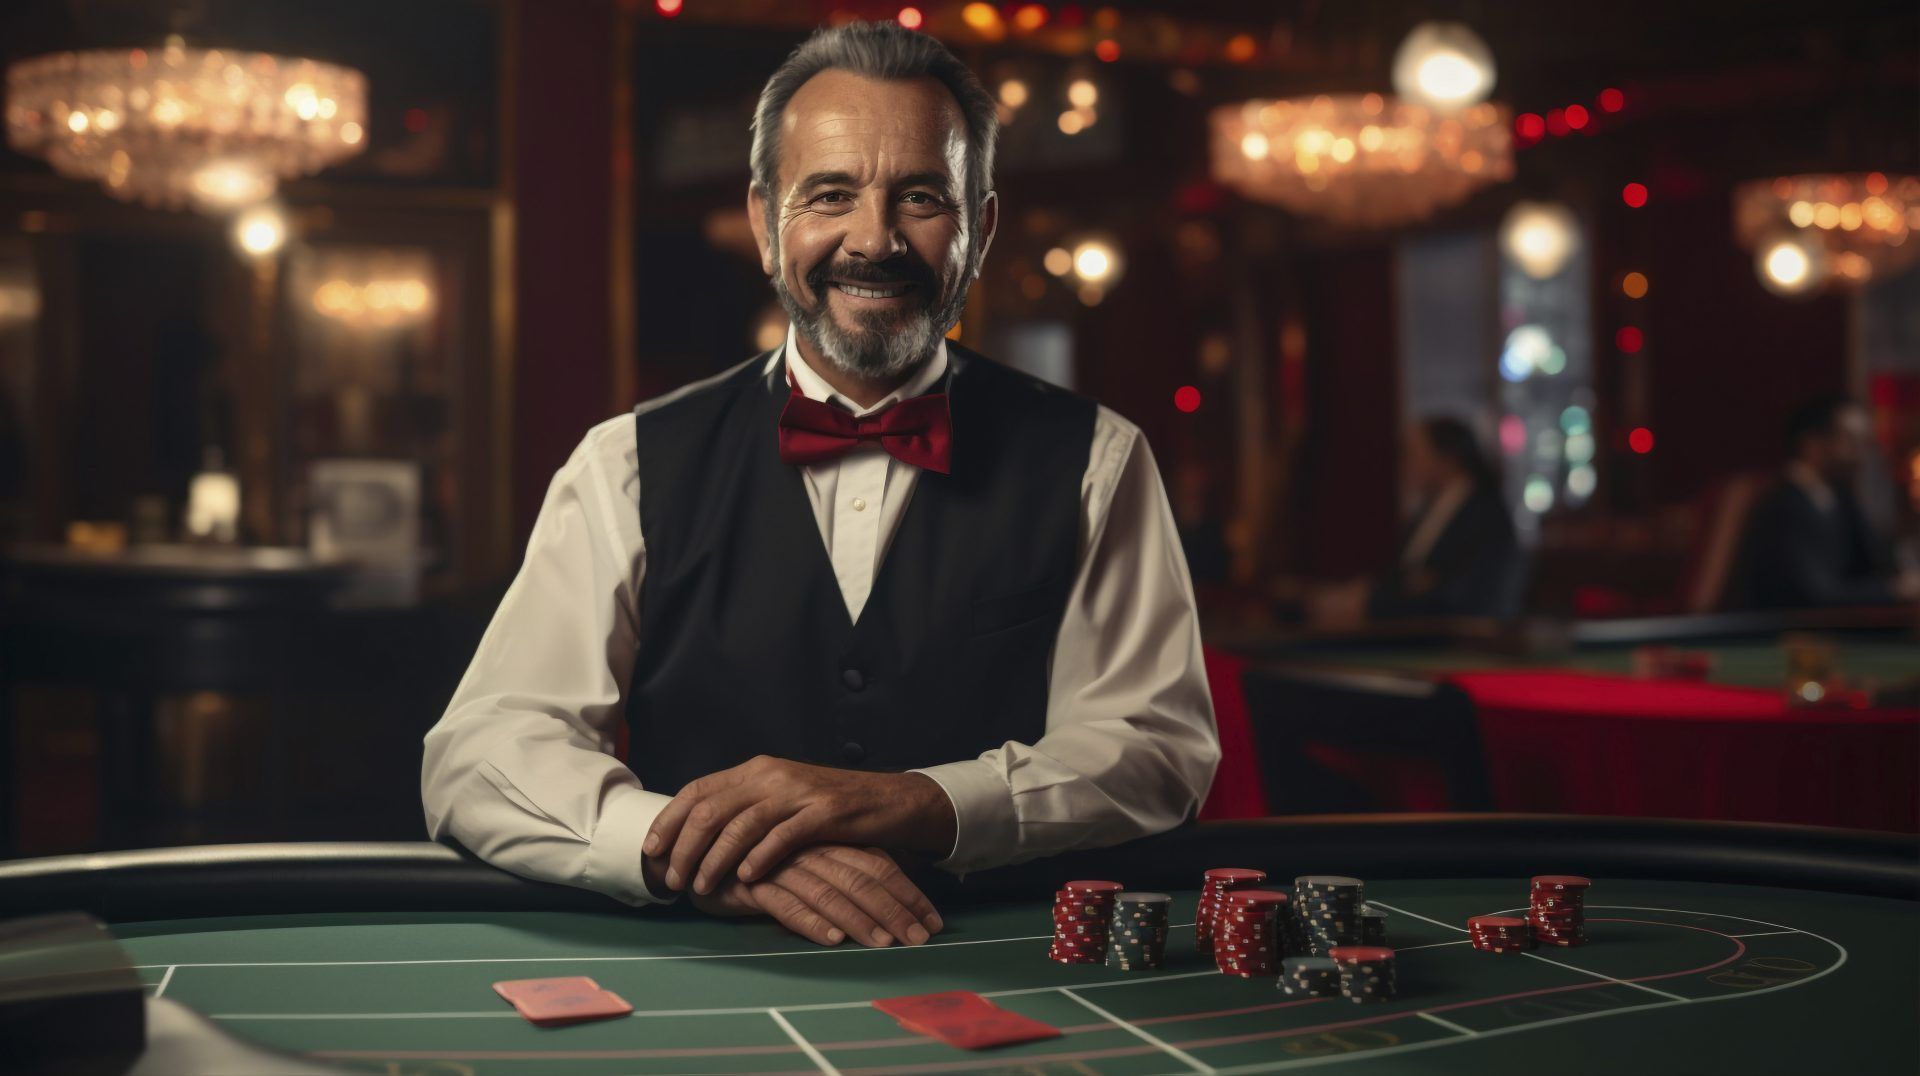 photorealistic casino lifestyle